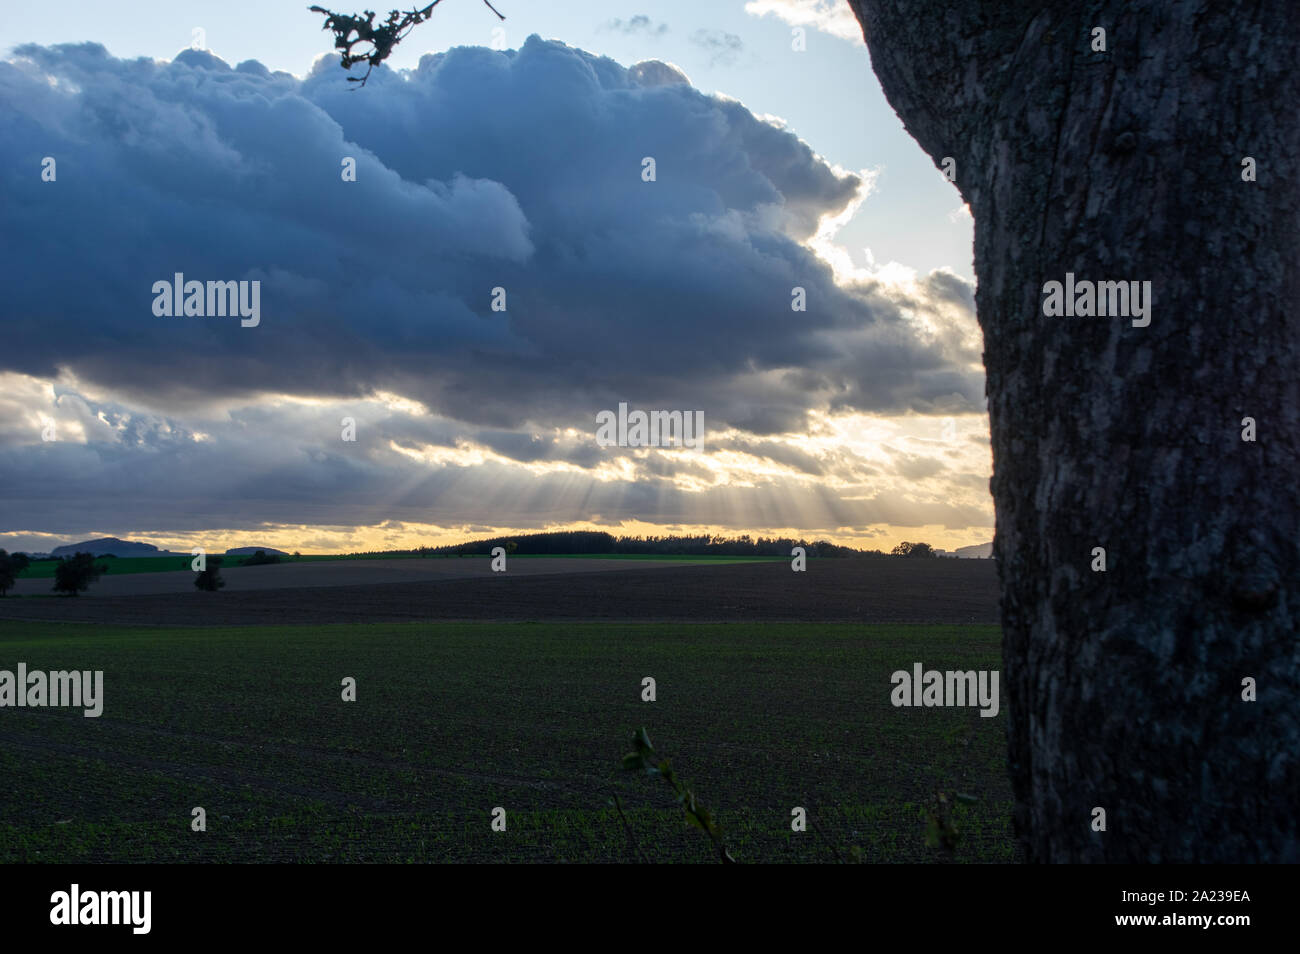 Sunray rottura attraverso le nuvole scure nella distanza con albero scuro in primo piano Foto Stock